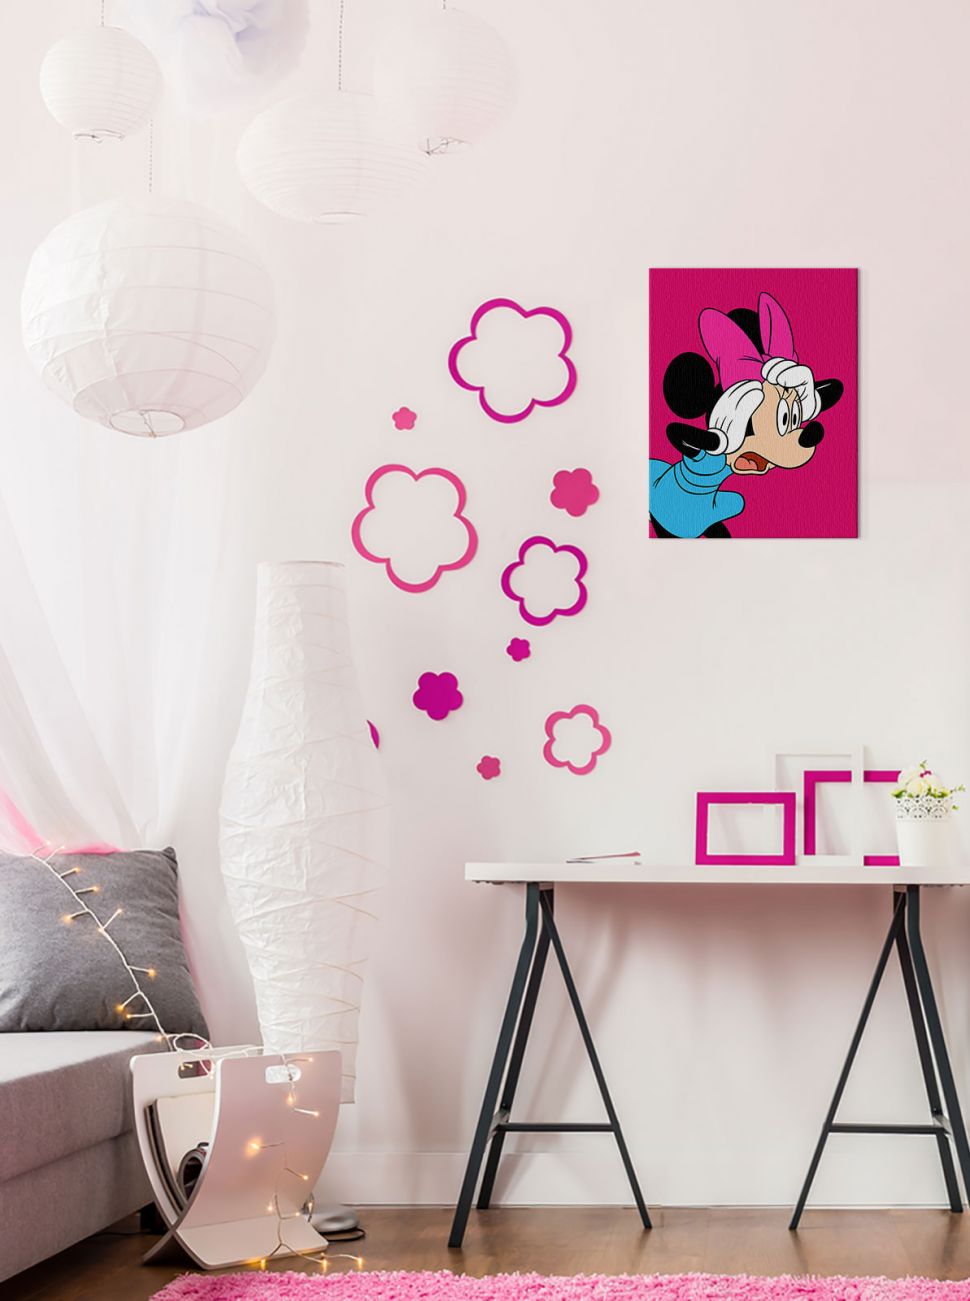 Obraz na płótnie ukazujący Minnie Mouse Shocked zawieszony w pokoju dziewczynki obok różowych kwiatków nad biurkiem